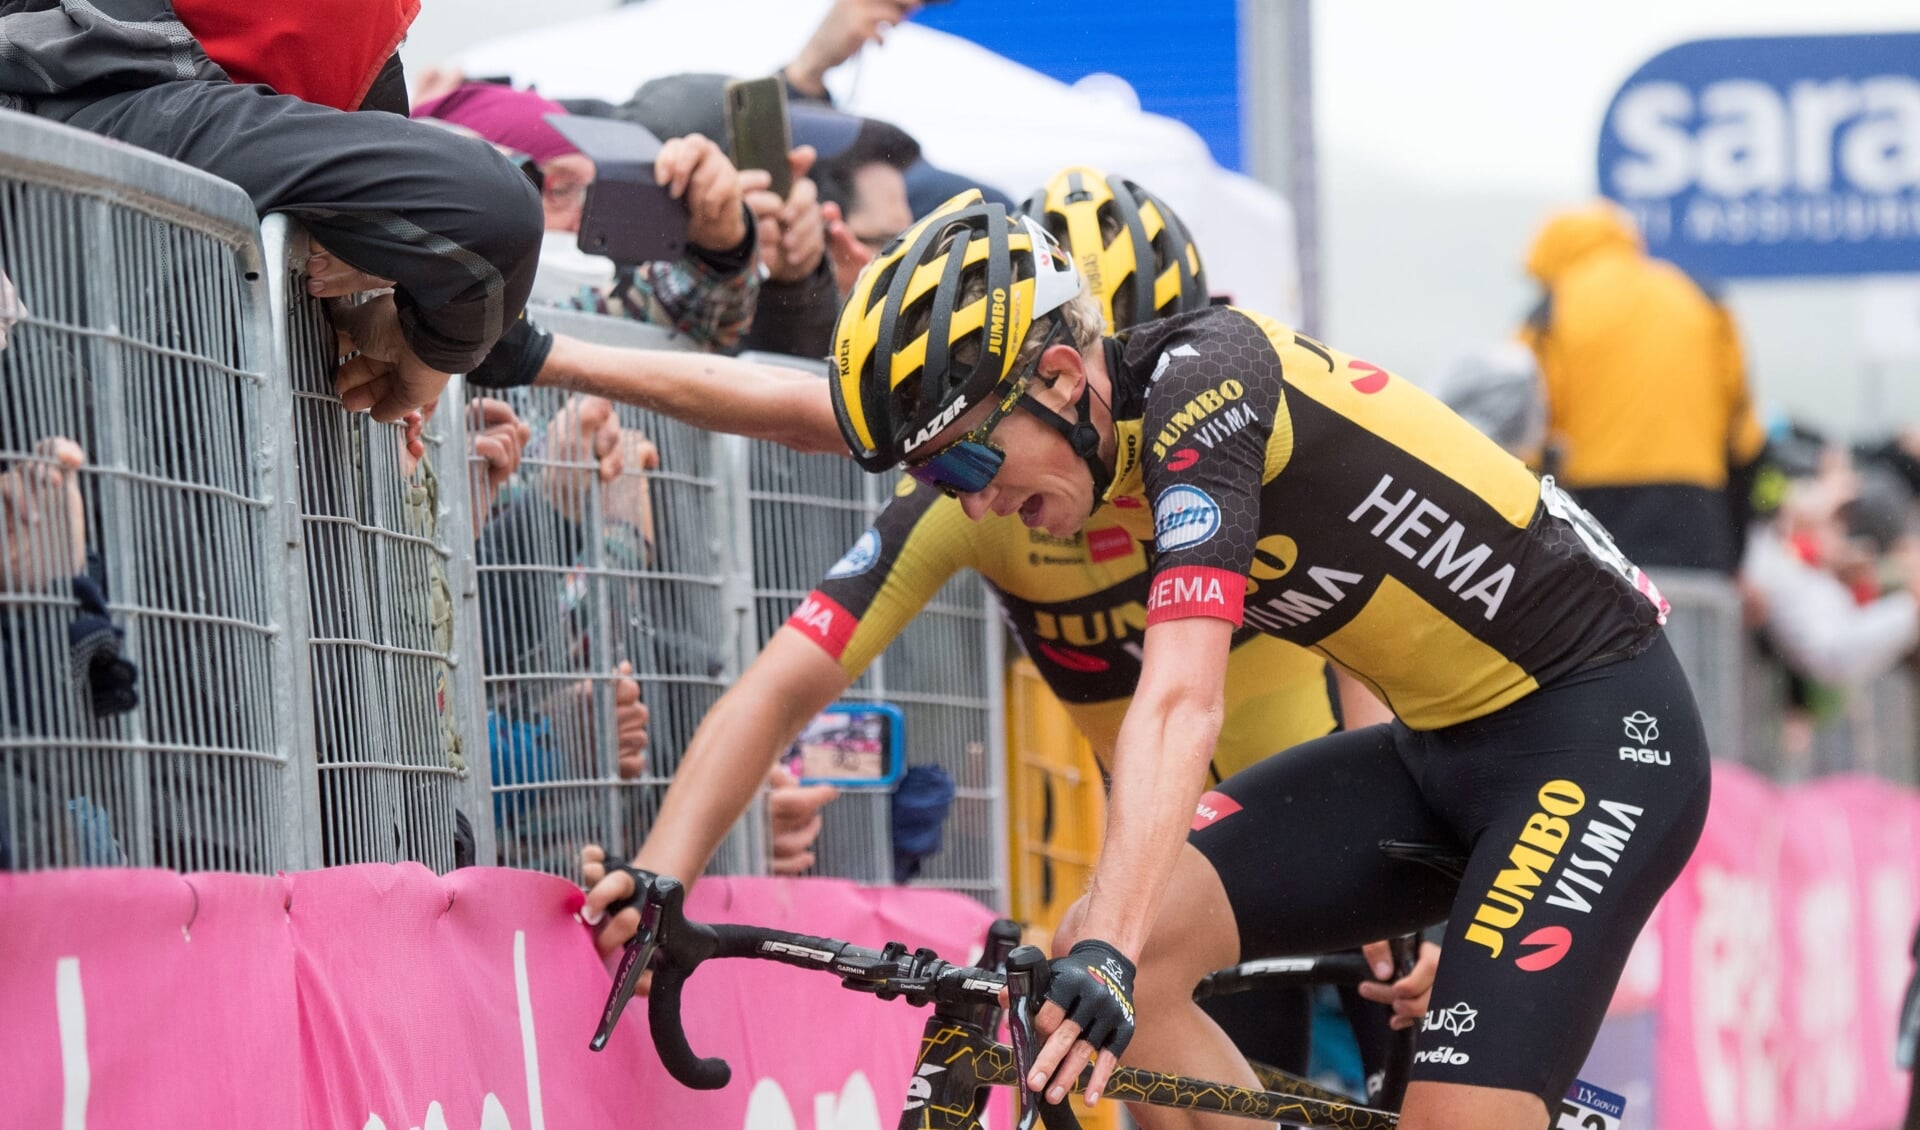 Doetinchemmer Koen Bouwman van team Jumbo Vista reed de Vuelta inmiddels drie keer. Vorig jaar werd hij twaalfde in de Giro d'Italia.